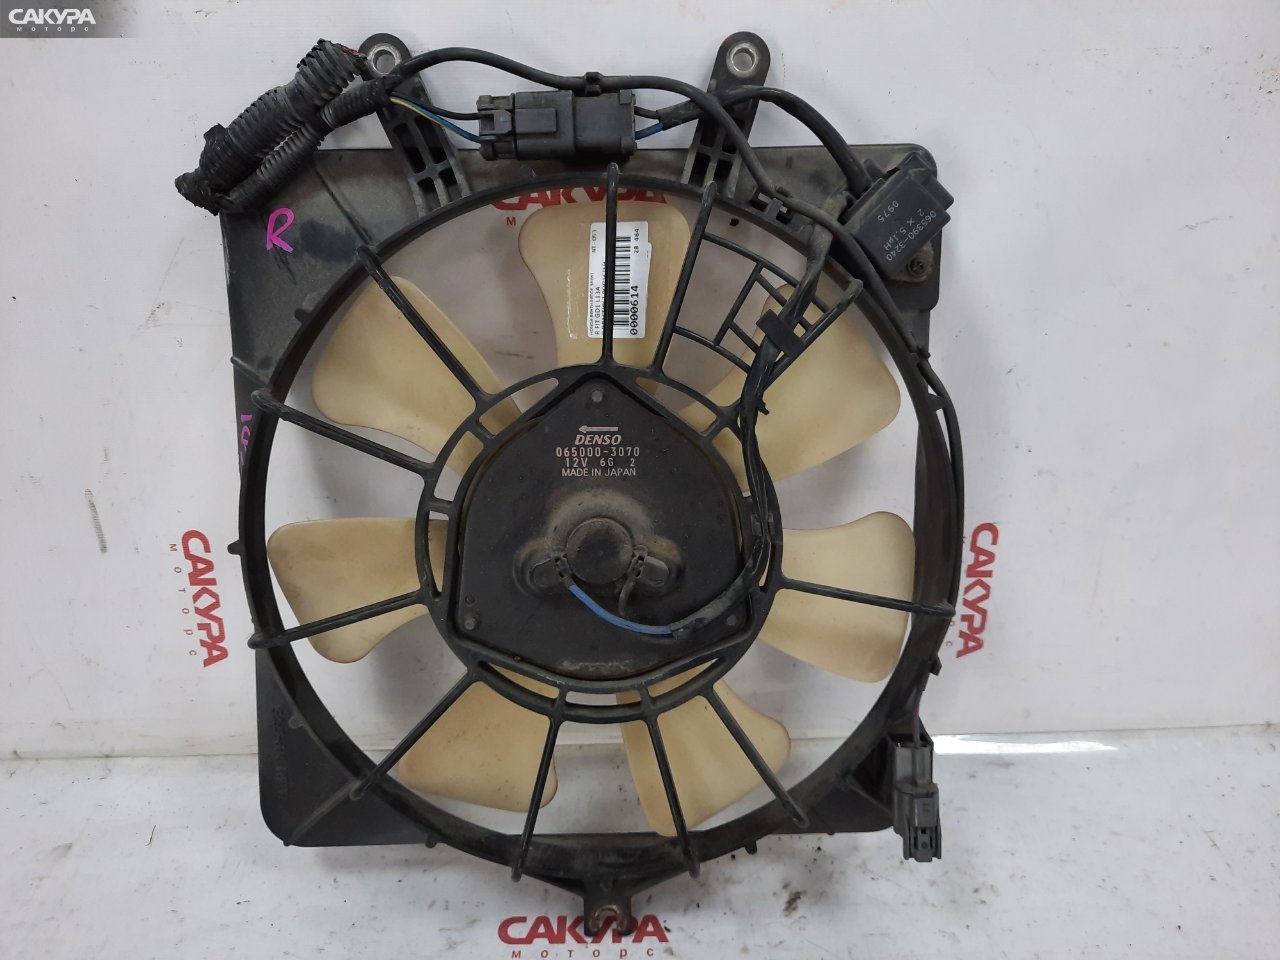 Вентилятор радиатора двигателя правый Honda FIT GD1 L13A: купить в Сакура Красноярск.